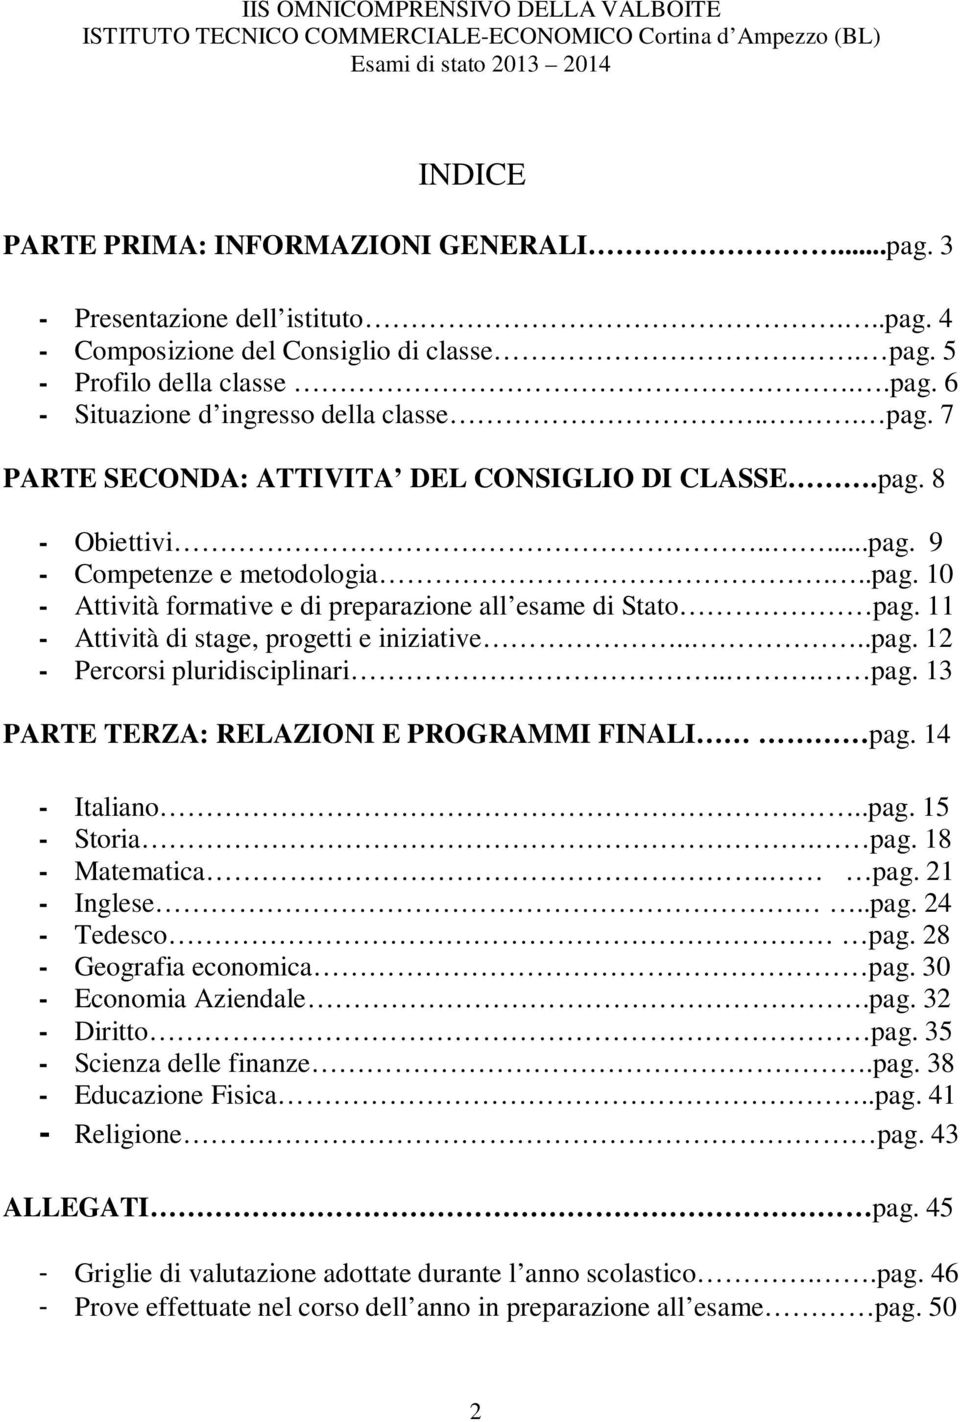 11 - Attività di stage, progetti e iniziative....pag. 12 - Percorsi pluridisciplinari... pag. 13 PARTE TERZA: RELAZIONI E PROGRAMMI FINALI pag. 14 - Italiano..pag. 15 - Storia. pag. 18 - Matematica.